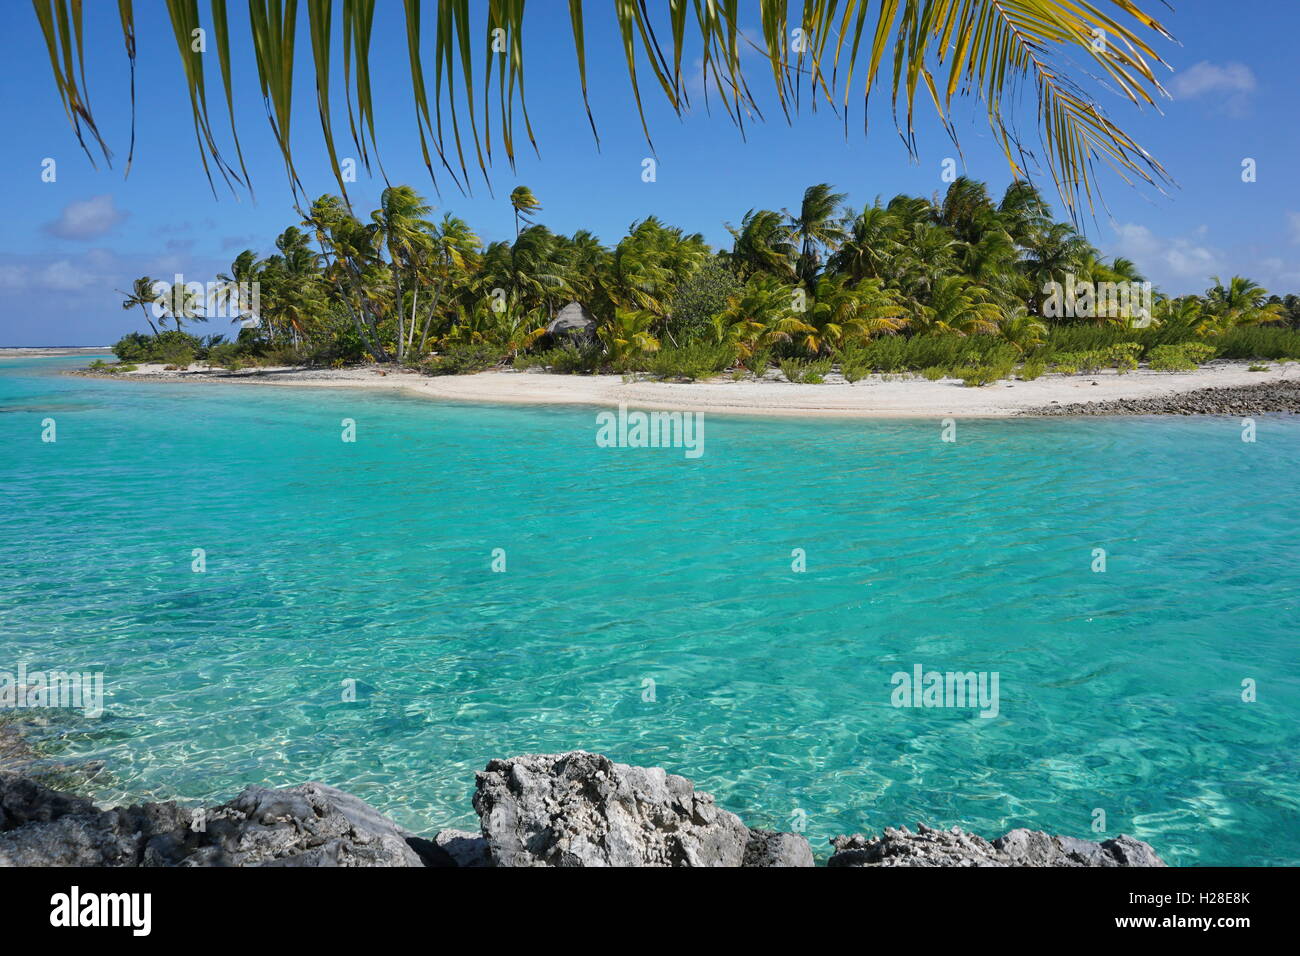 Tropical islet with turquoise water, atoll of Tikehau, Tuamotu archipelago, French Polynesia, Pacific ocean Stock Photo